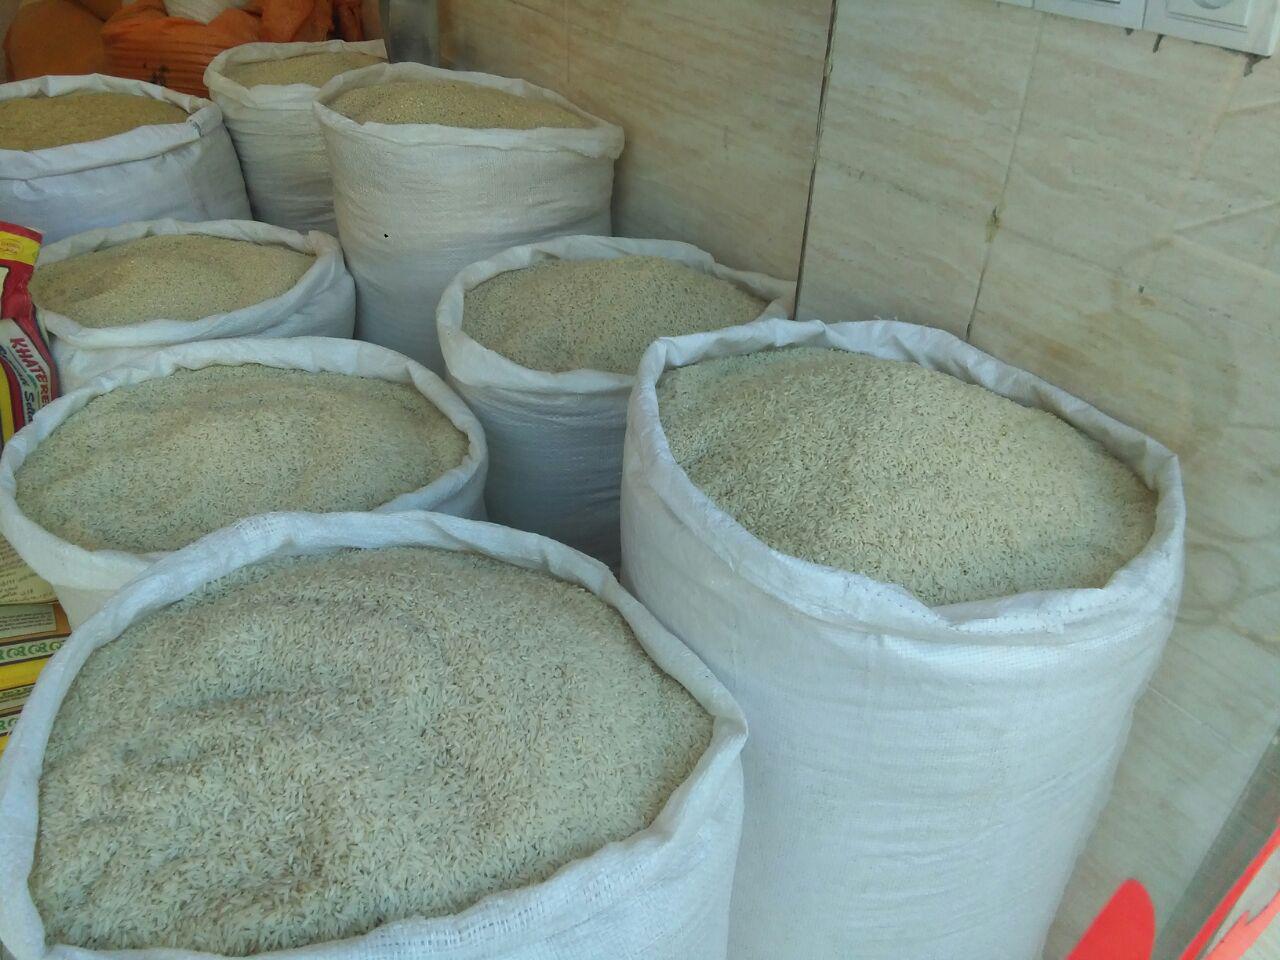 قیمت روز برنج